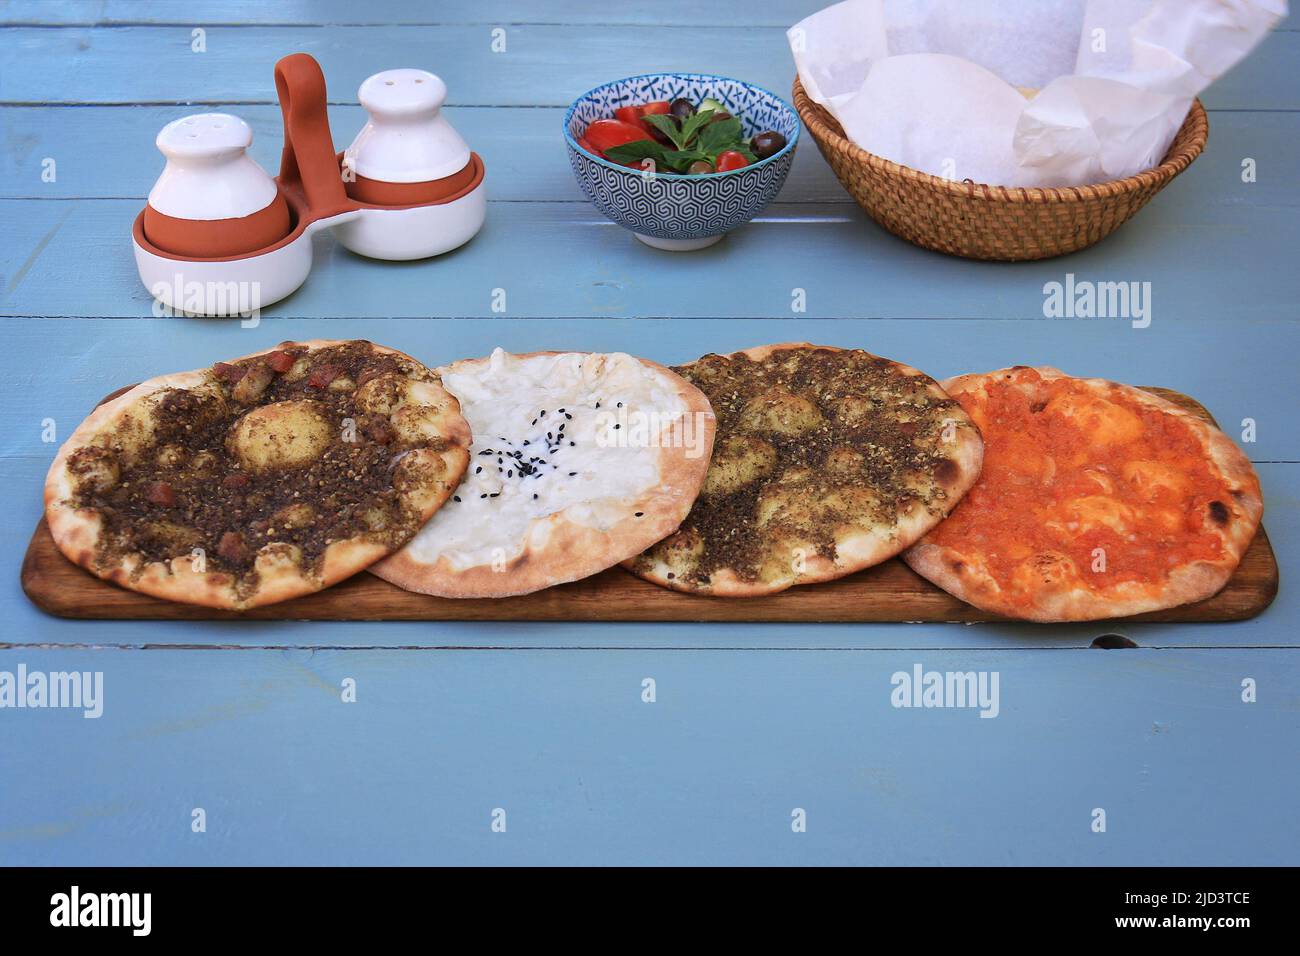 Ein Set aus libanesischem Maouajanet oder Manaqish, Zaatar, Käse und lahm b Ajin. Stockfoto